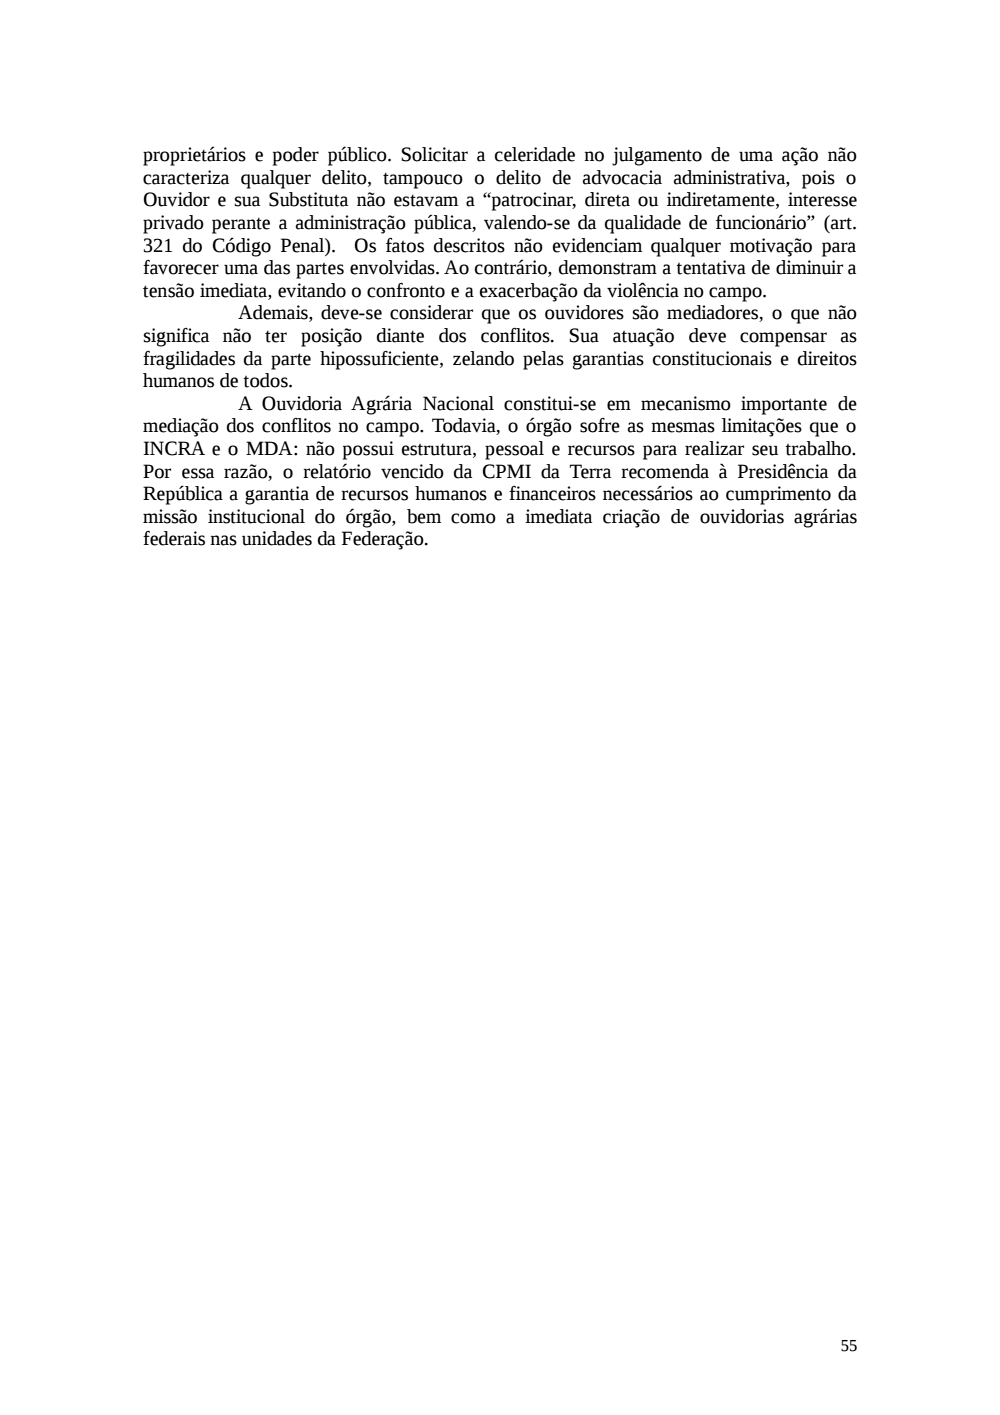 Page 55 from Relatório final da comissão